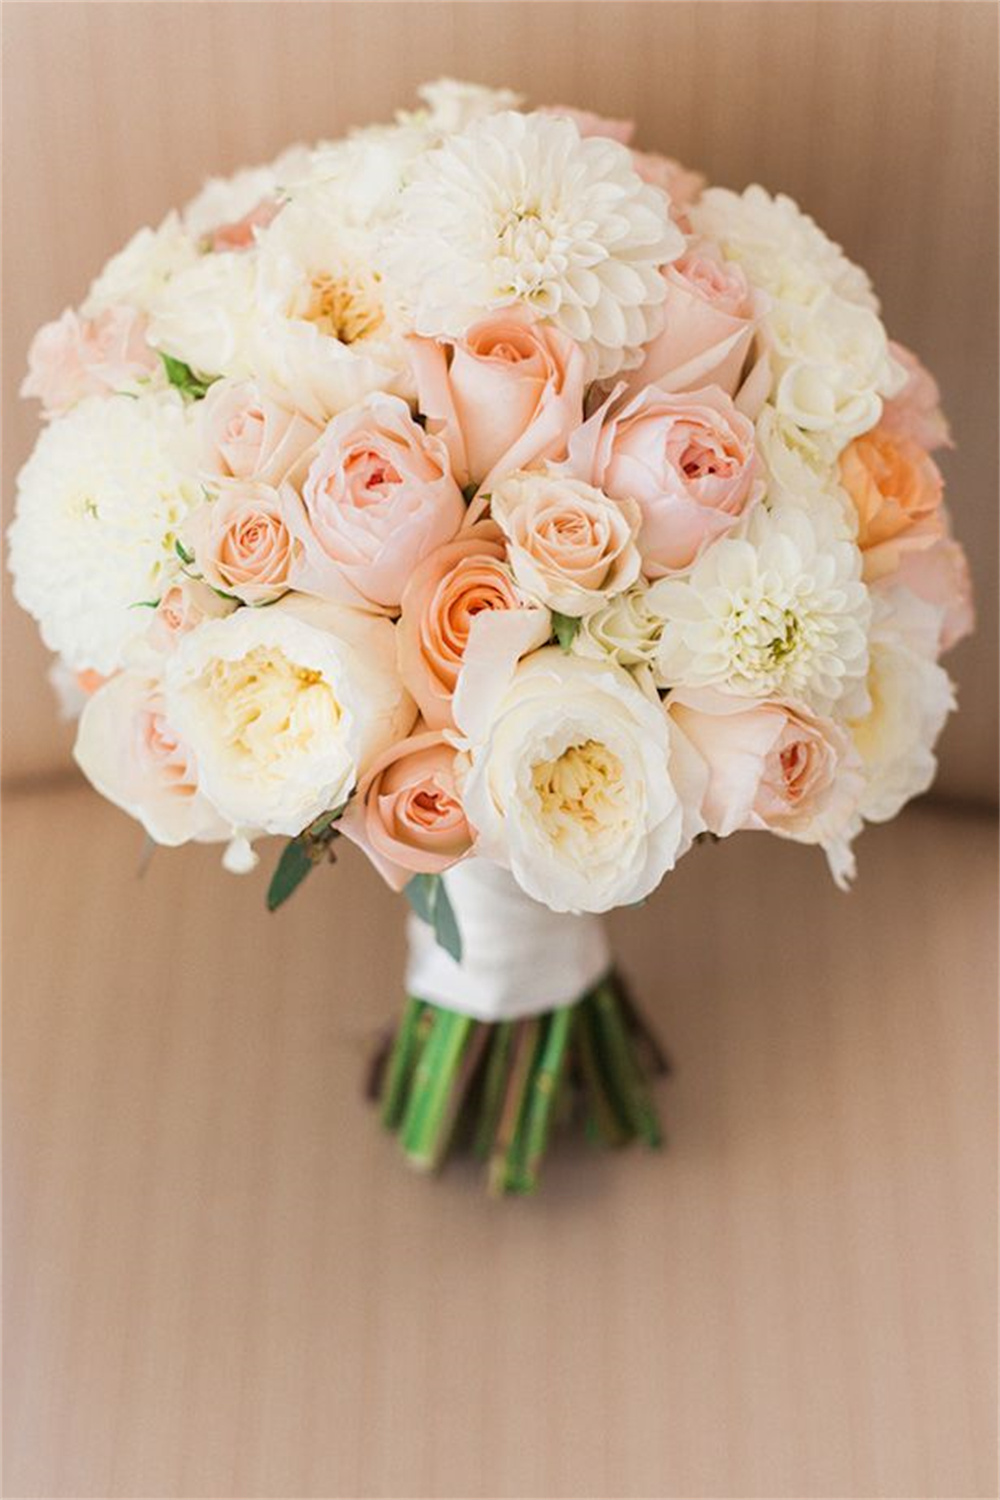 Elegant Peach Wedding Bouquet Ideas